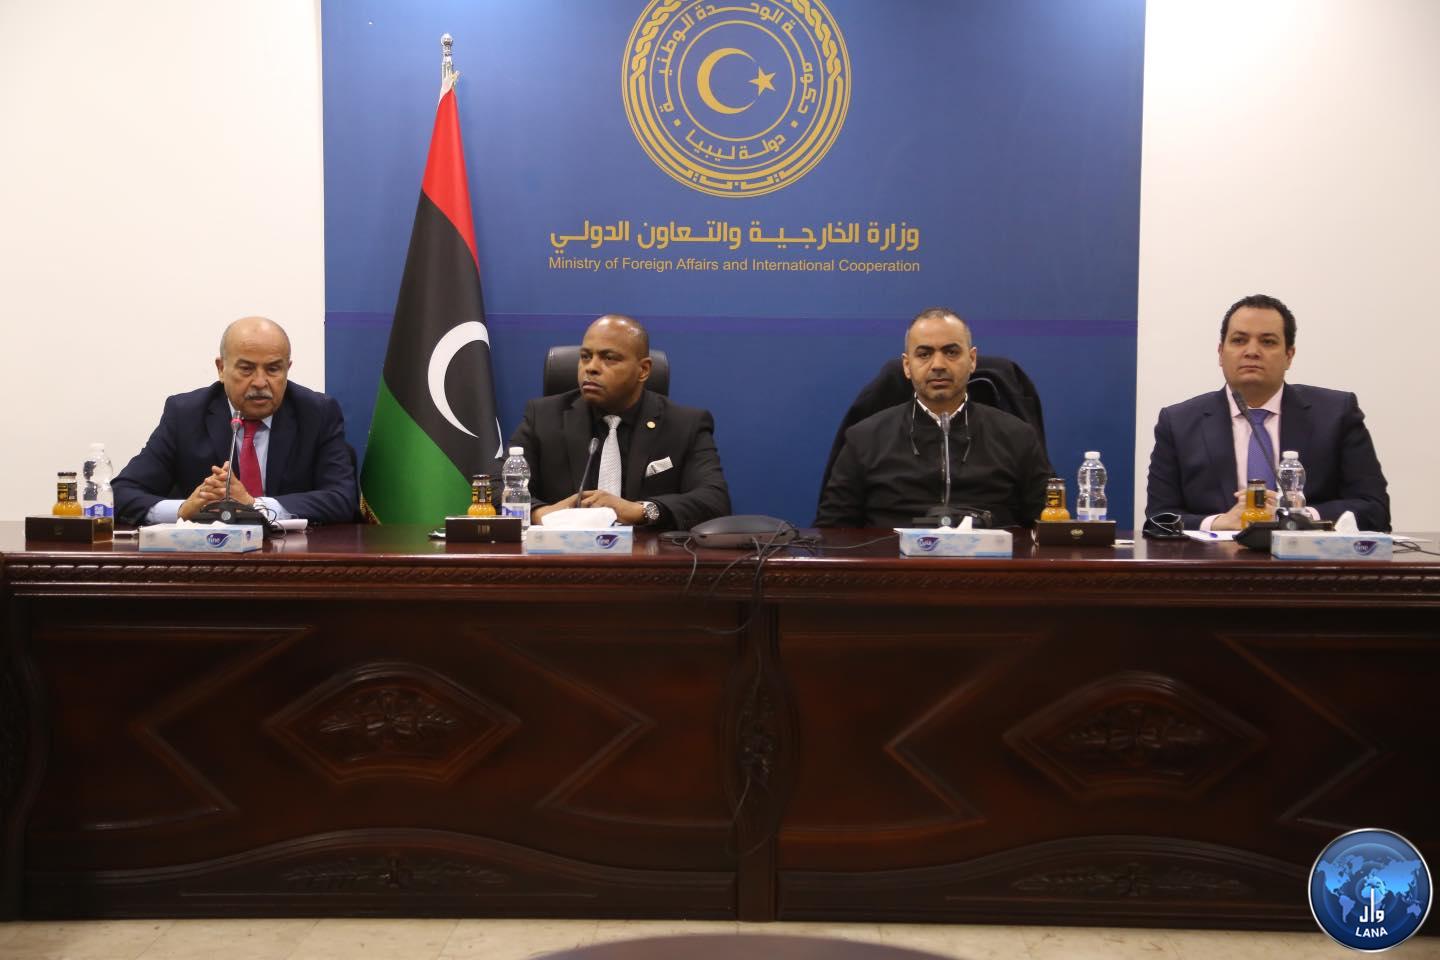  الخارجية تبحث مع مسؤولي الجهات ذات العلاقة، سبل عودة رحلات الطيران الدولية إلى ليبيا.